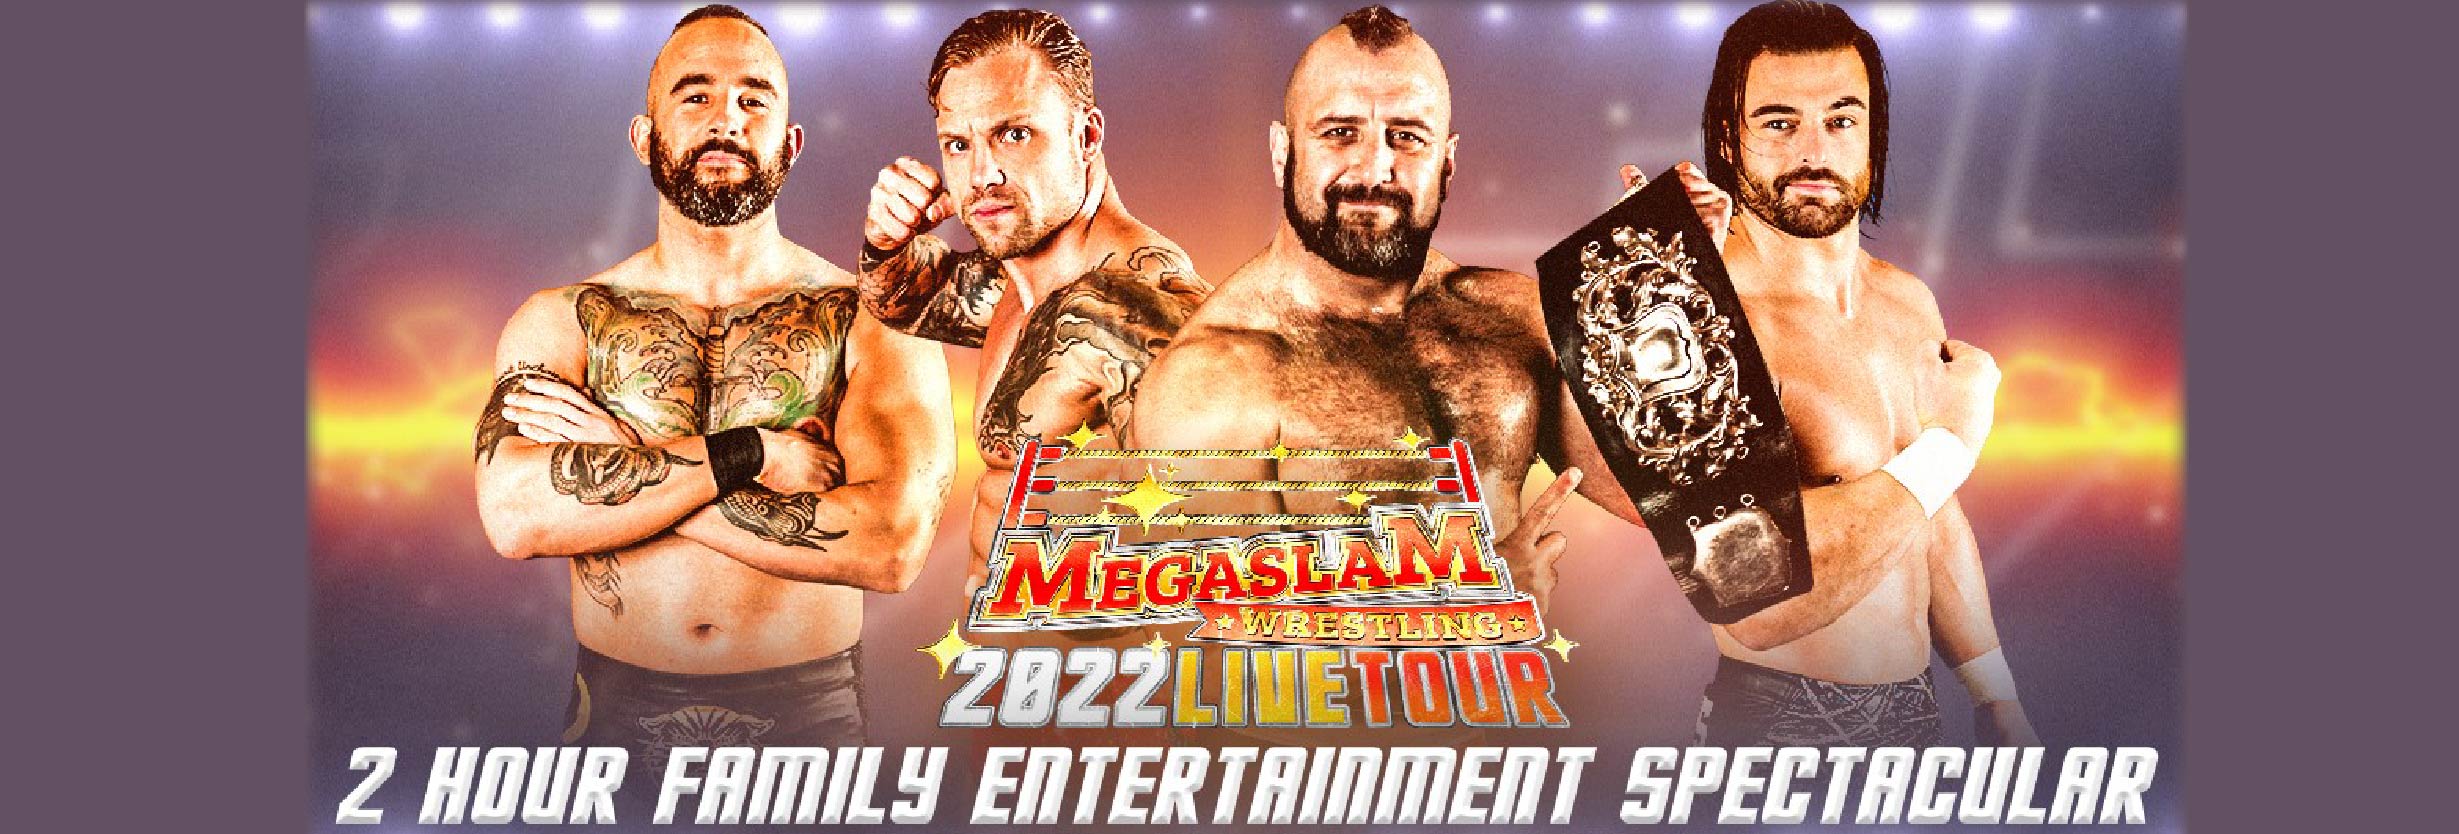 Megaslam Wrestling Live